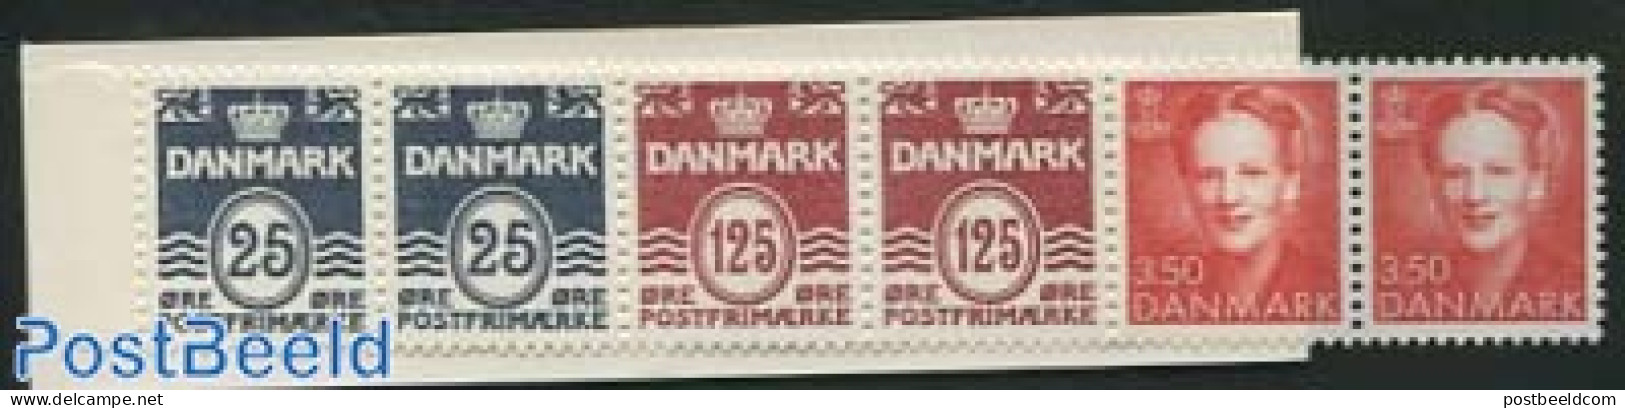 Denmark 1991 Definitives Booklet, Mint NH, Stamp Booklets - Unused Stamps